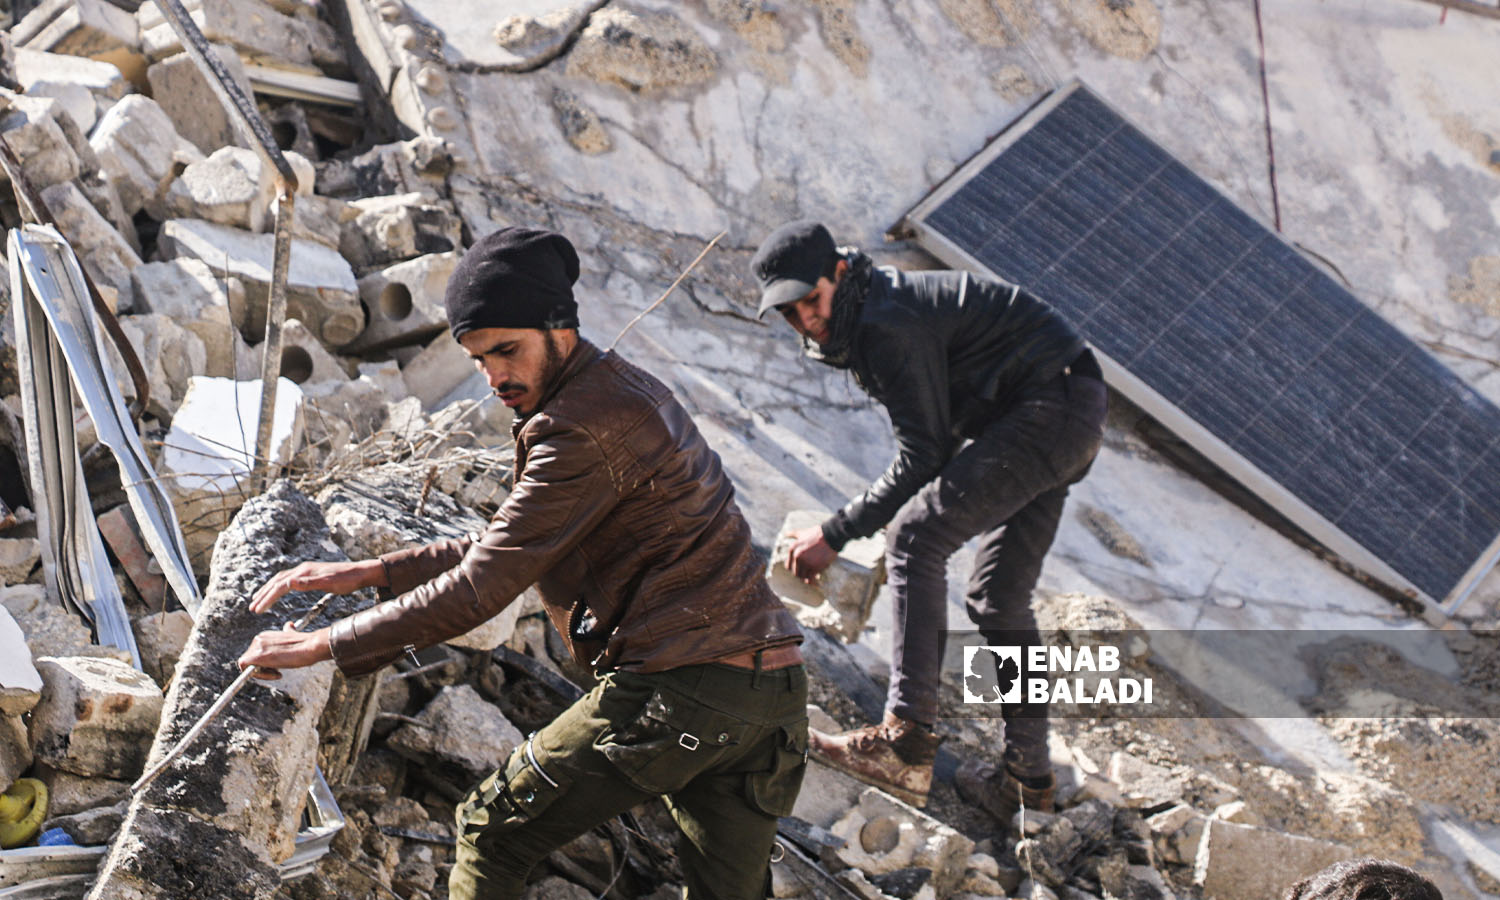 متطوعون يحاولون إنقاذ وانتشال الضحايا من تحت الركام في منطقة أرمناز إثر زلزال ضرب مناطق شمال غربي سوريا- 7 شباط 2023 (عنب بلدي/ إياد عبد الجواد)